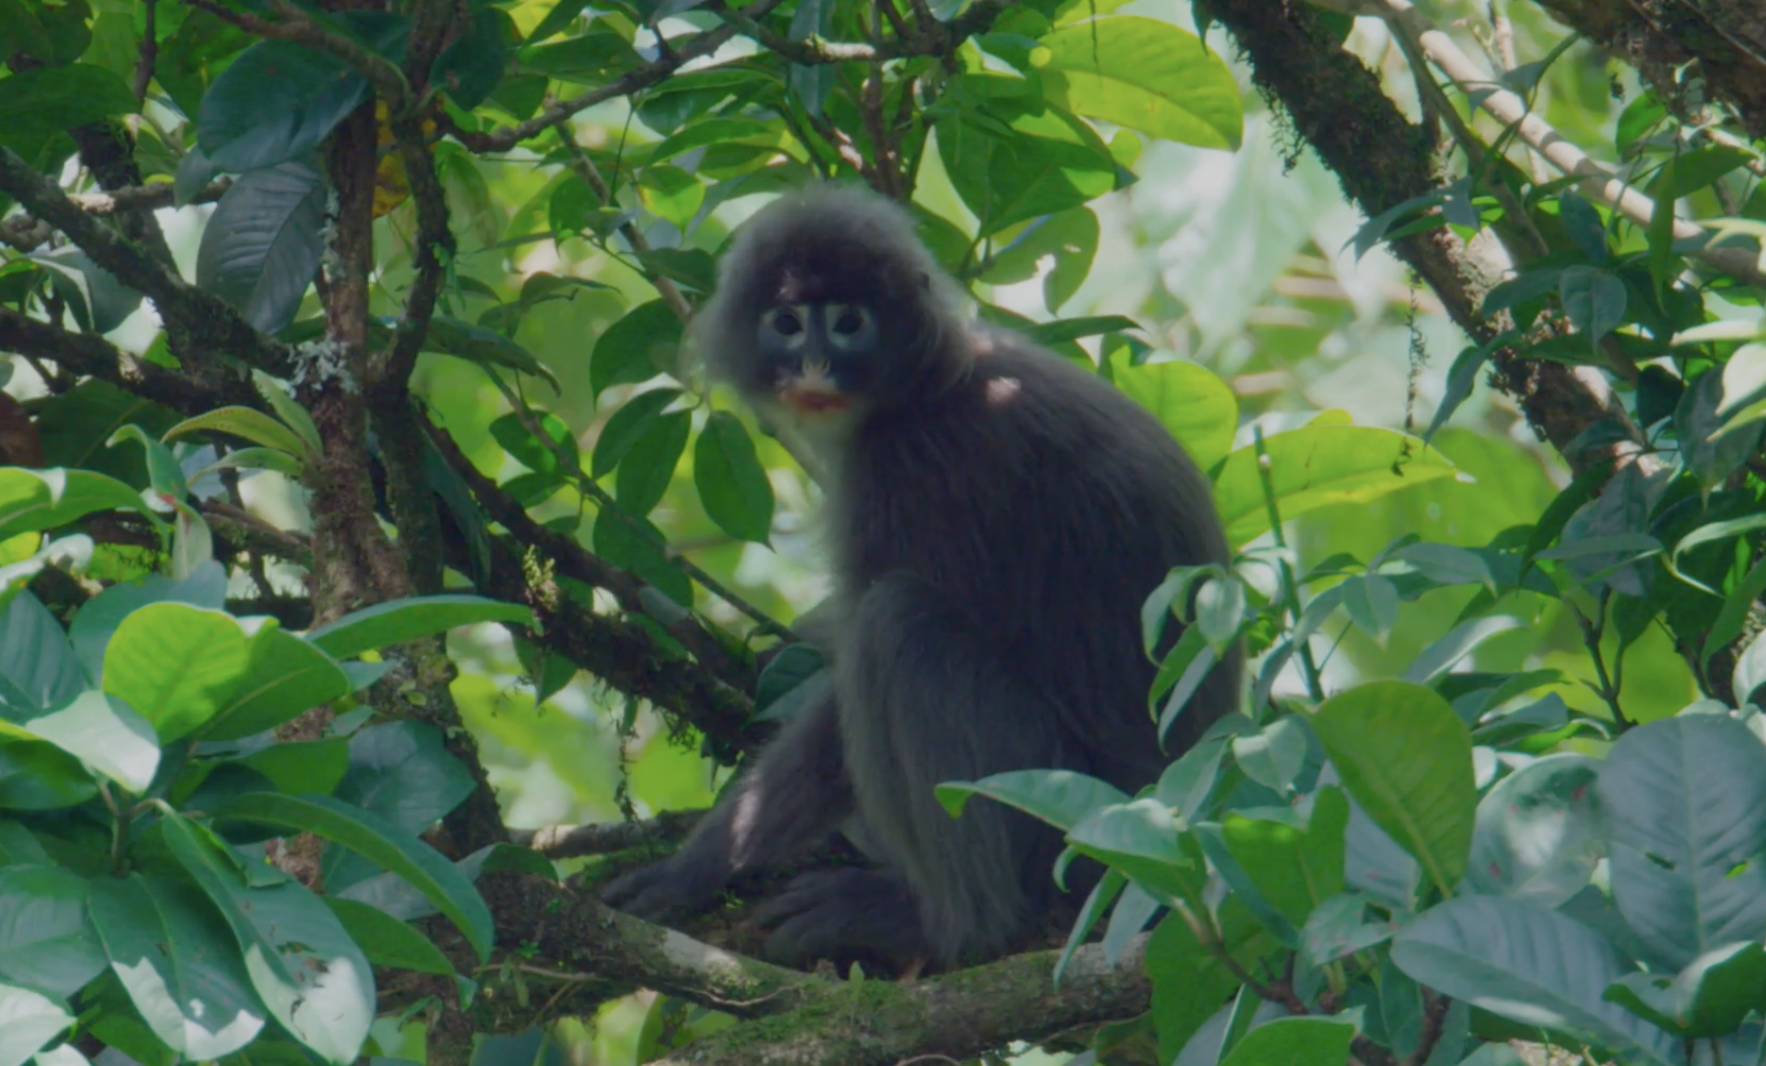 The Phayre's leaf monkey in Yunnan. /CGTN's 